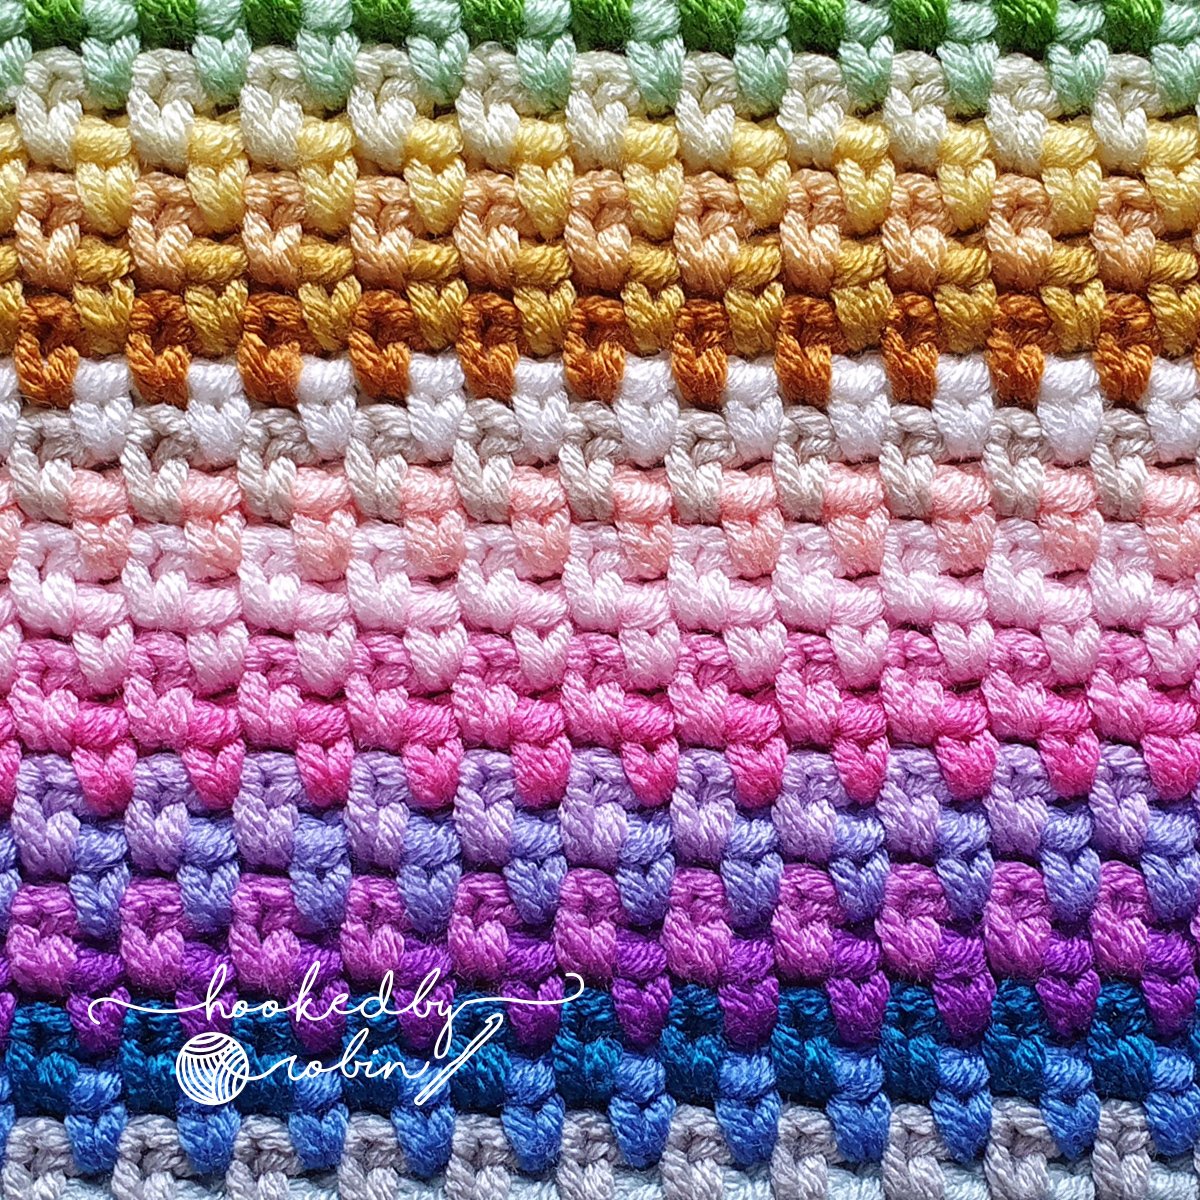 Crochet Moss Stitch Written Pattern — Hooked by Robin